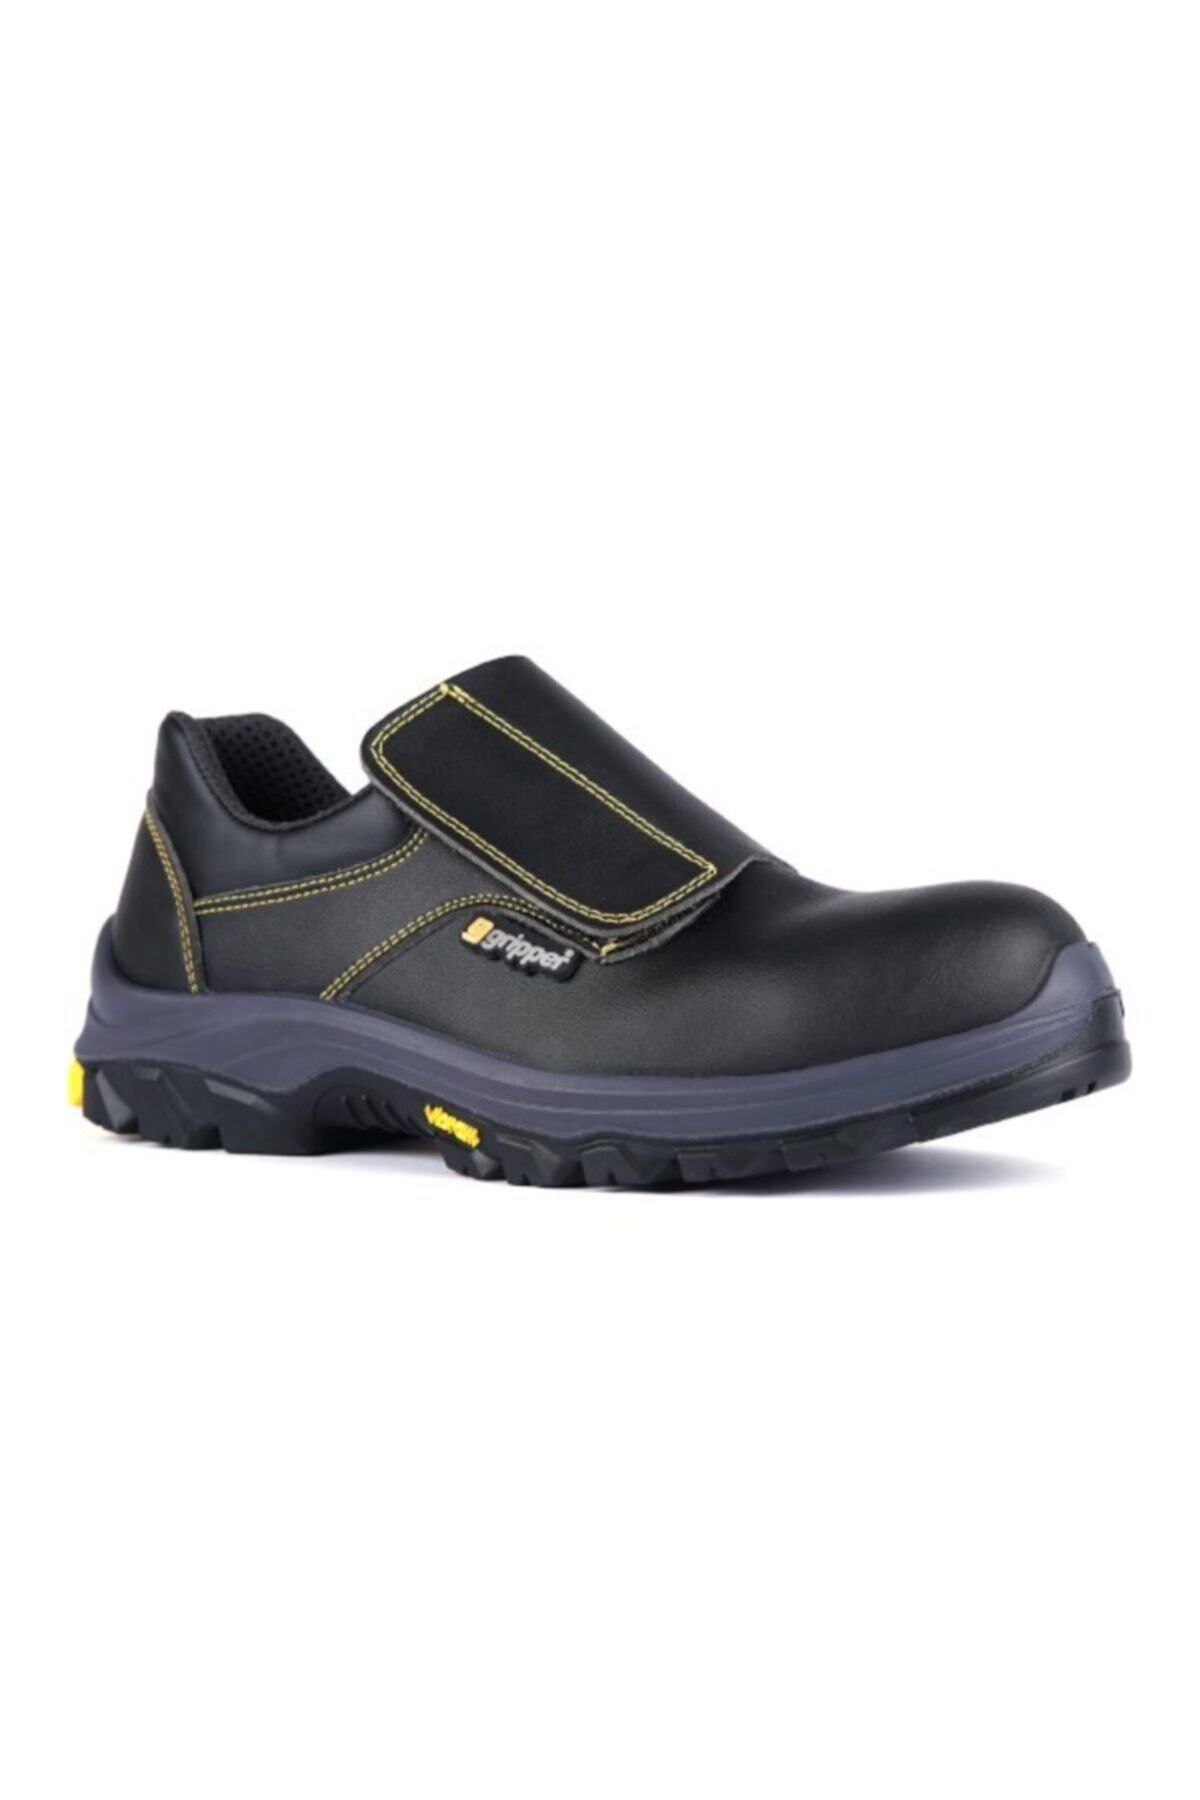 Gripper Gpr-34 S3 Siyah Deri Kompozit Vibram Taban Iş Güvenlik Ayakkabısı